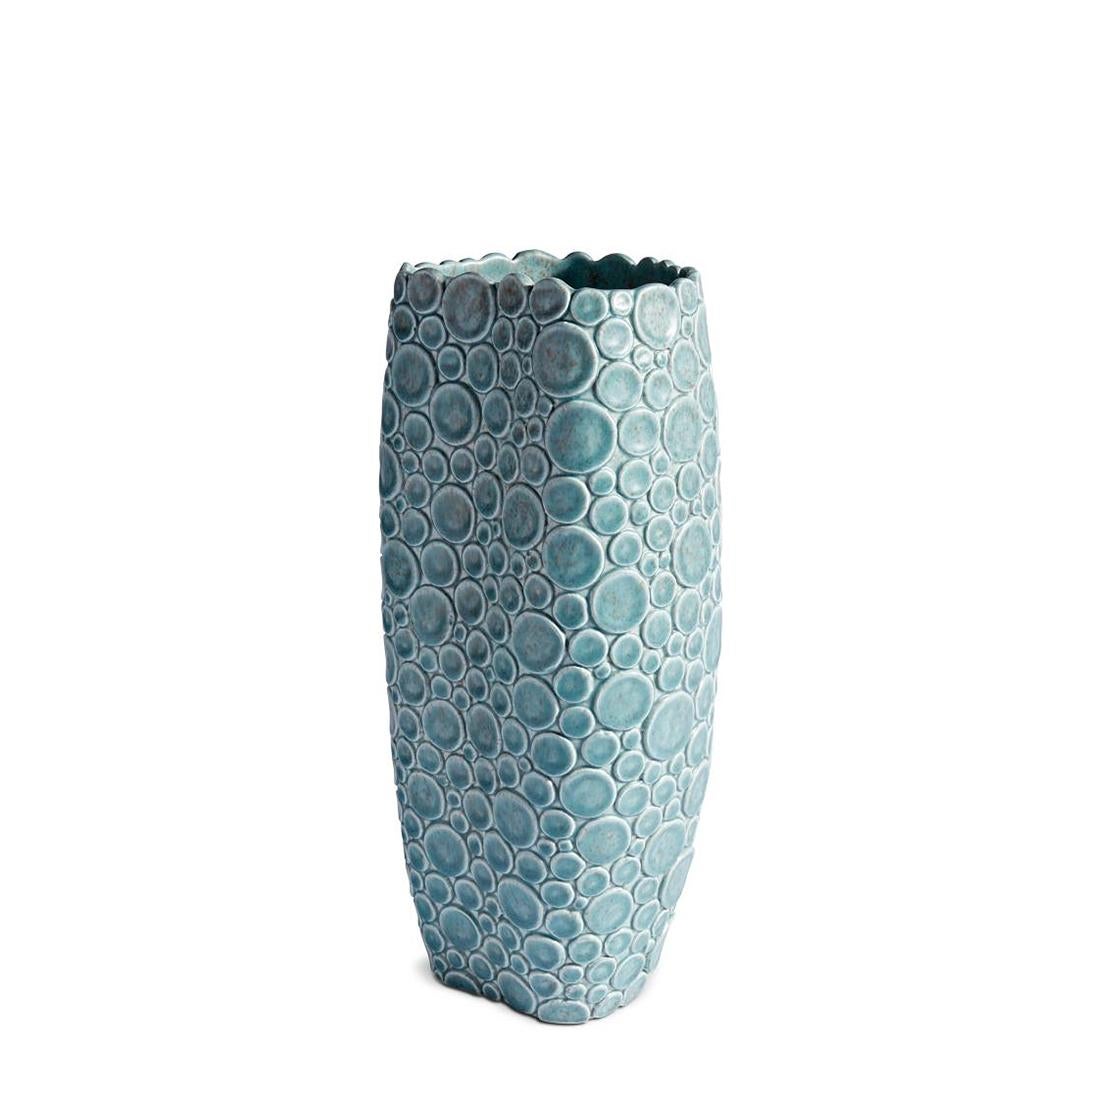 Vase klar Jade in Steingut.
Auch in hellrosa Farbe erhältlich.